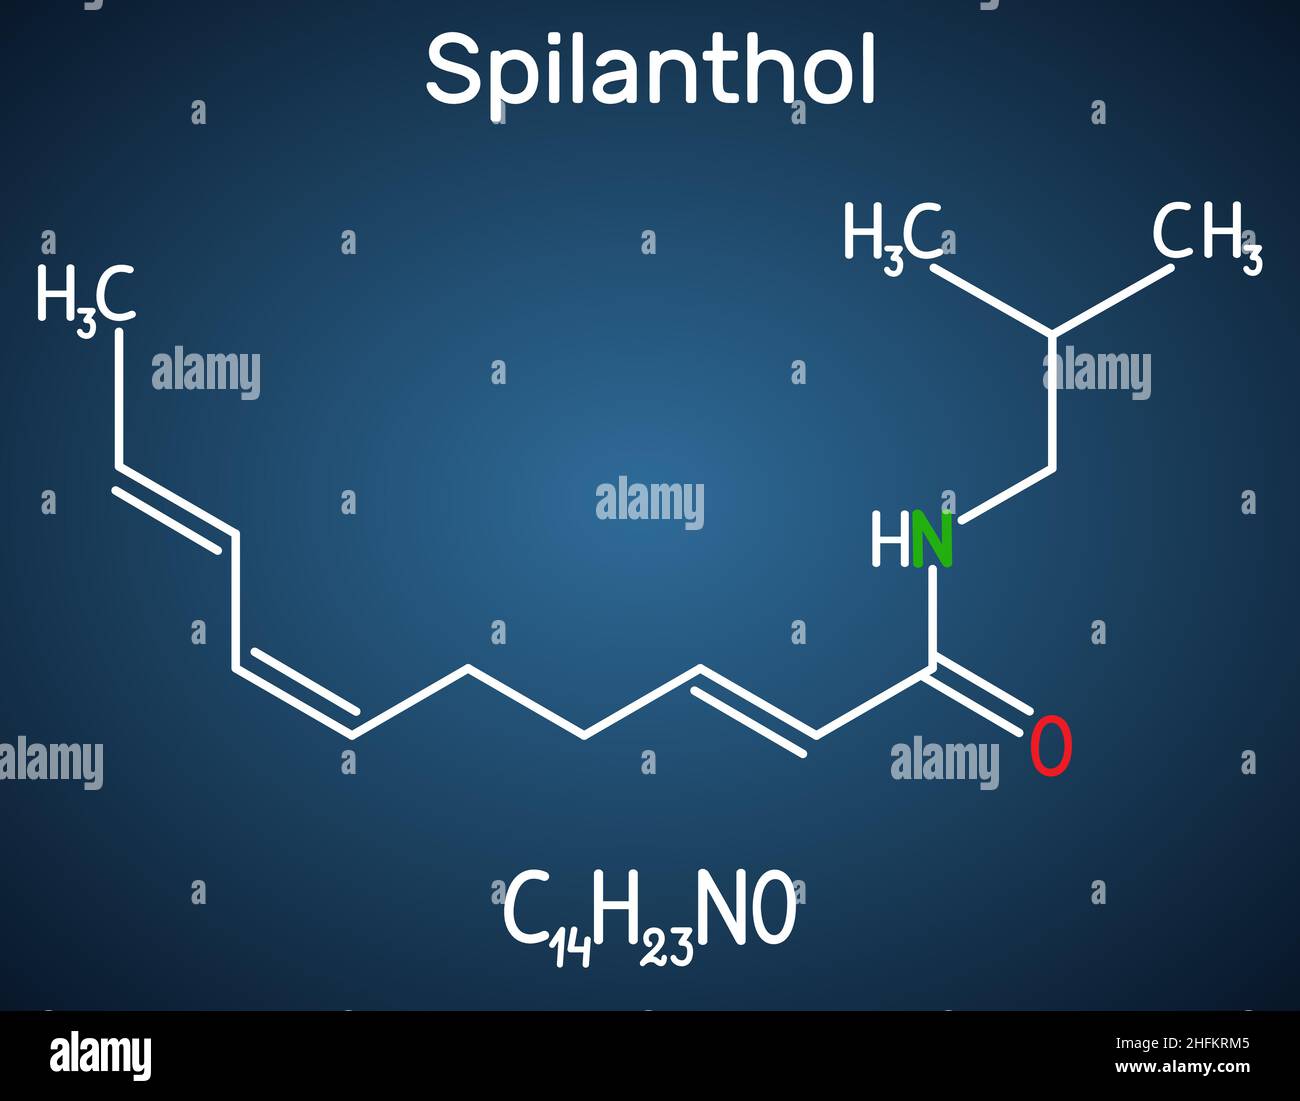 Spilanthol-Molekül. Es ist ein Fettsäureamid, wird für die lokalen Anäureeigenschaften und in der Kosmetologie verwendet. Strukturelle chemische Formel auf dem dar Stock Vektor